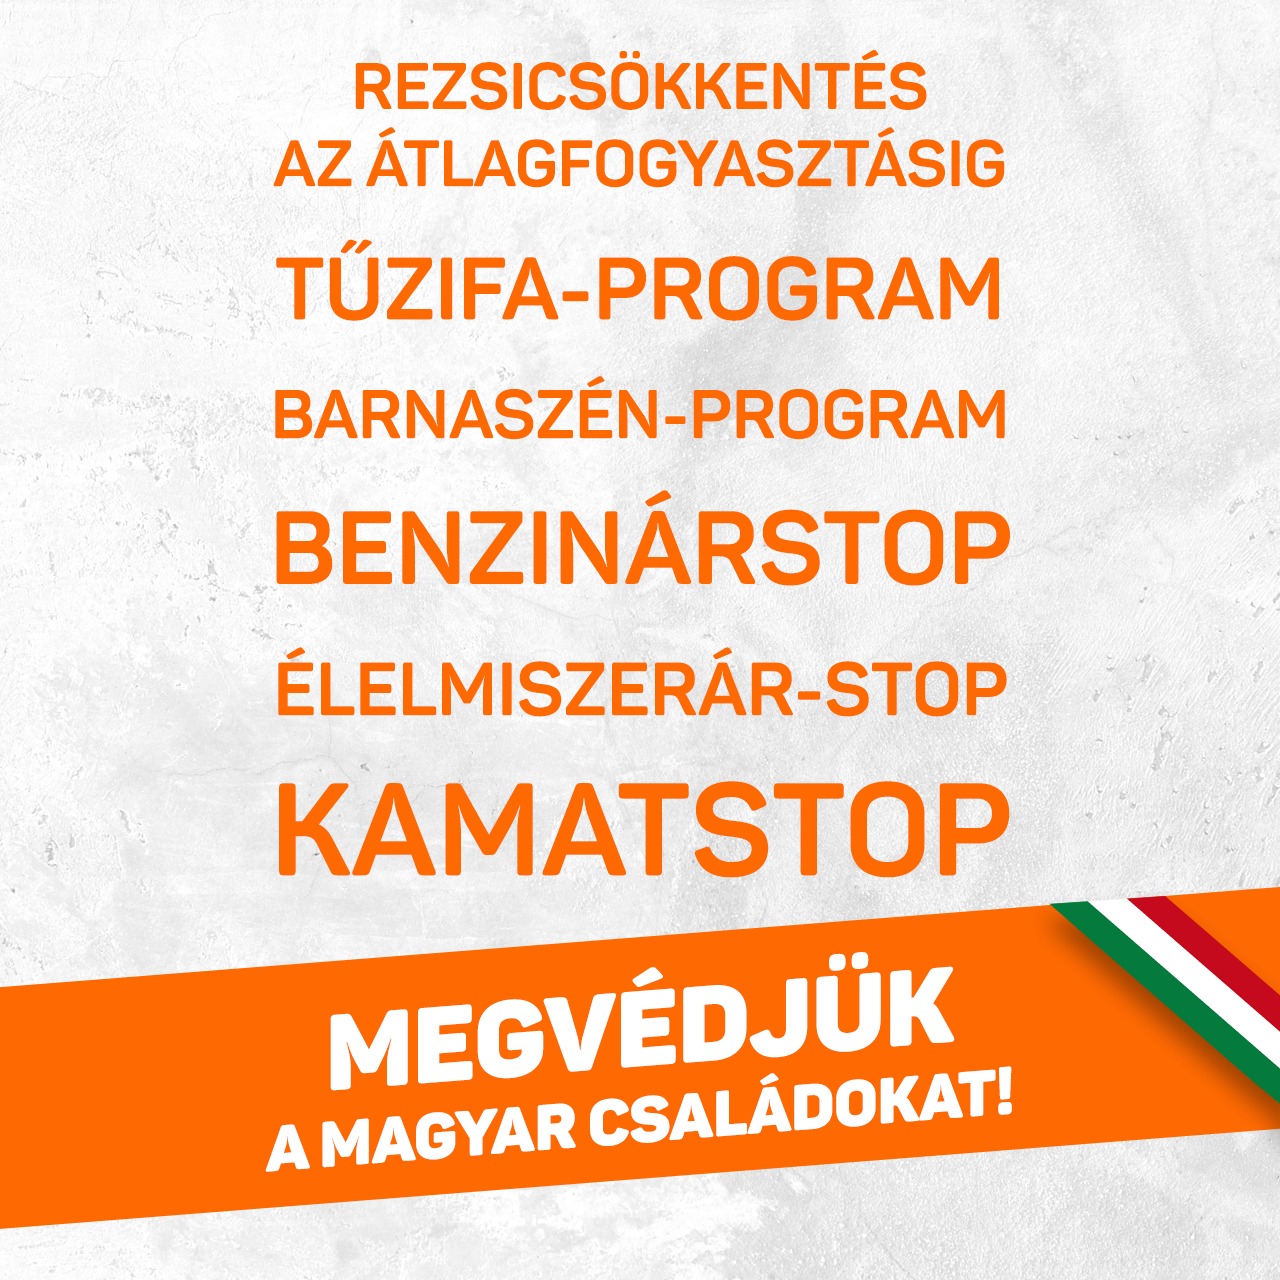 Megvédjük a magyar családokat!